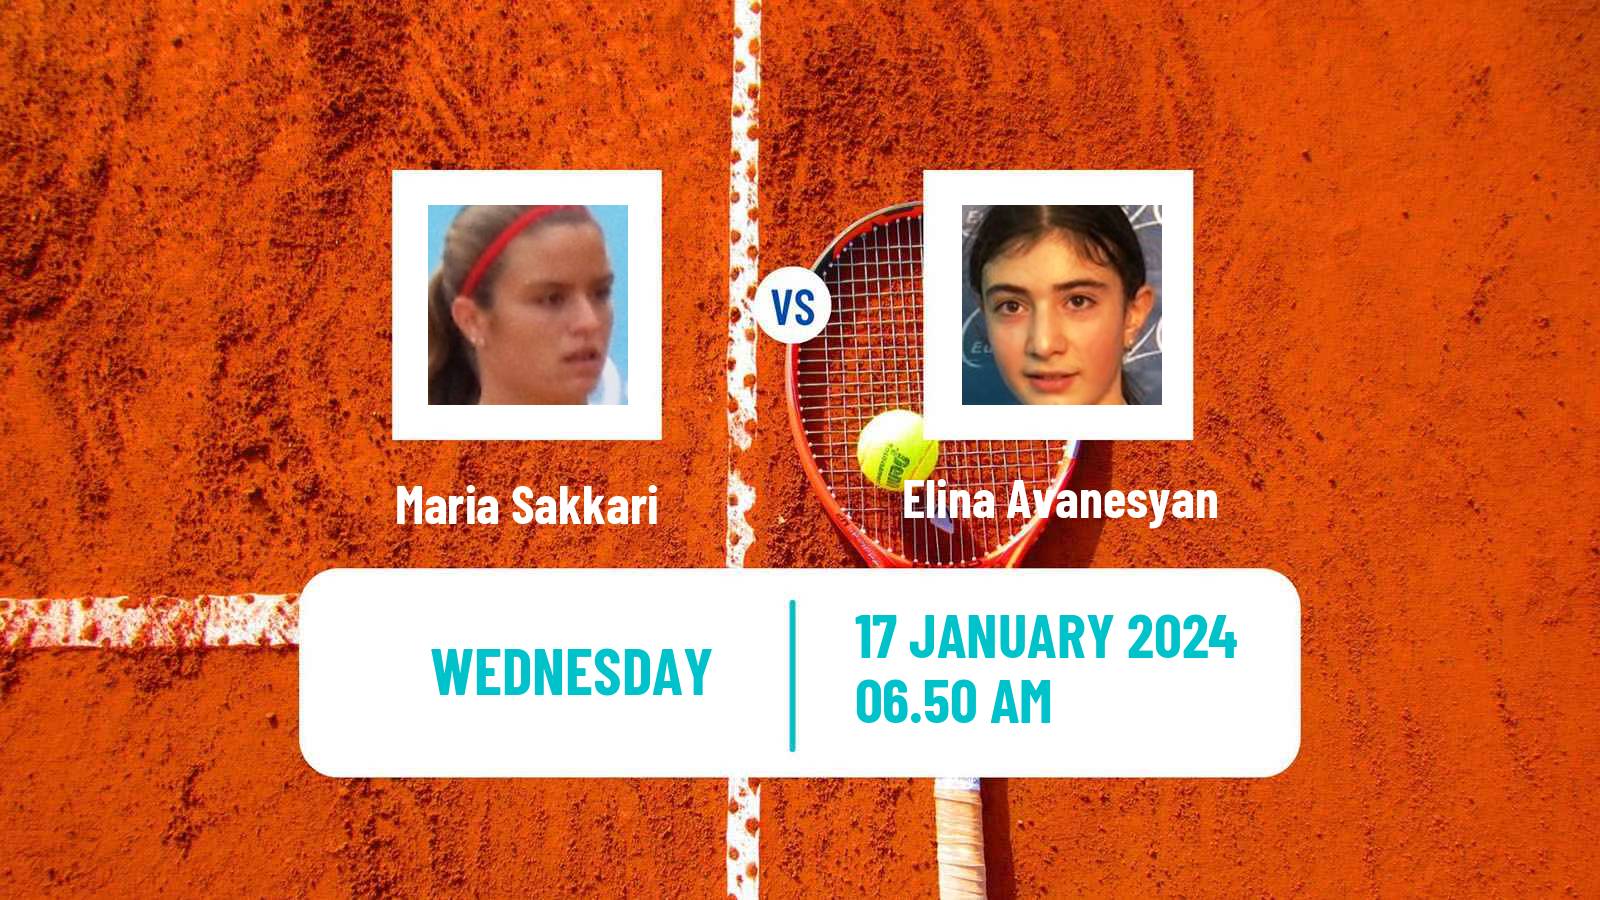 Tennis WTA Australian Open Maria Sakkari - Elina Avanesyan